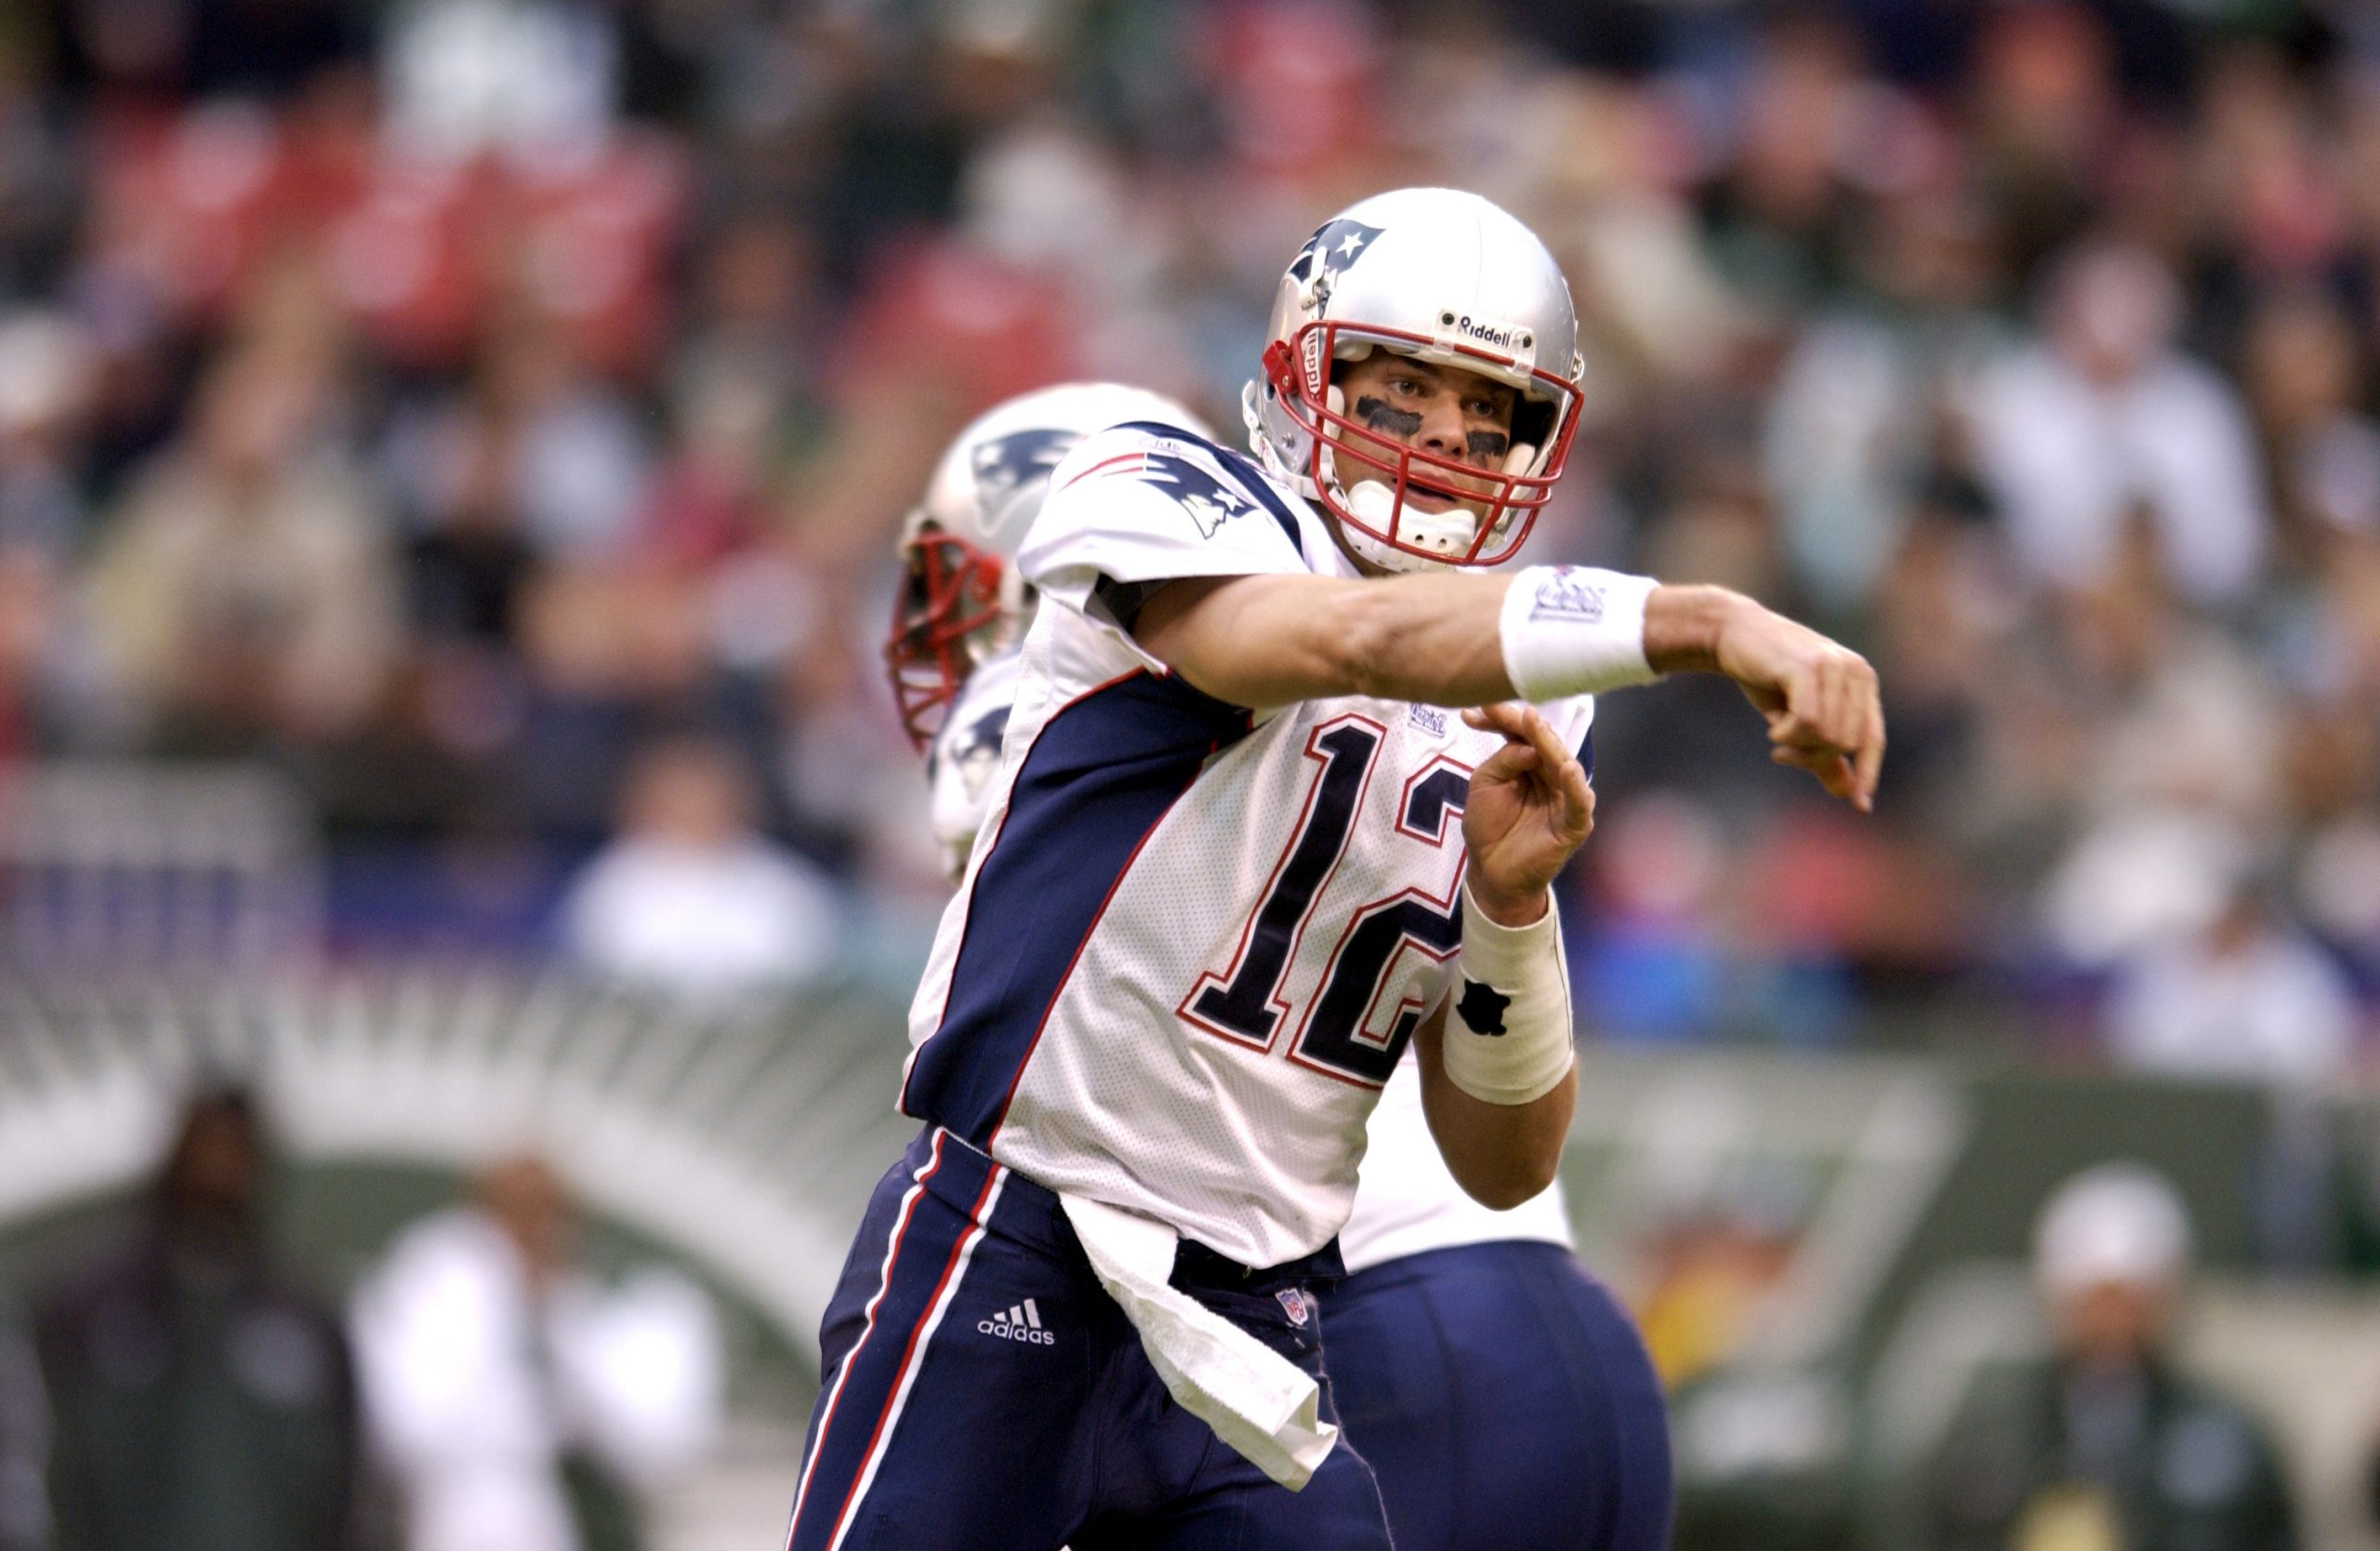 FootballR - NFL - Der Quarterback der New England Patriots, der auch ein ehemaliger NFL Most Valuable Player (NFL MVP) ist, wirft den Ball während eines Spiels. Tom Brady holte mehrfach den MVP-Titel